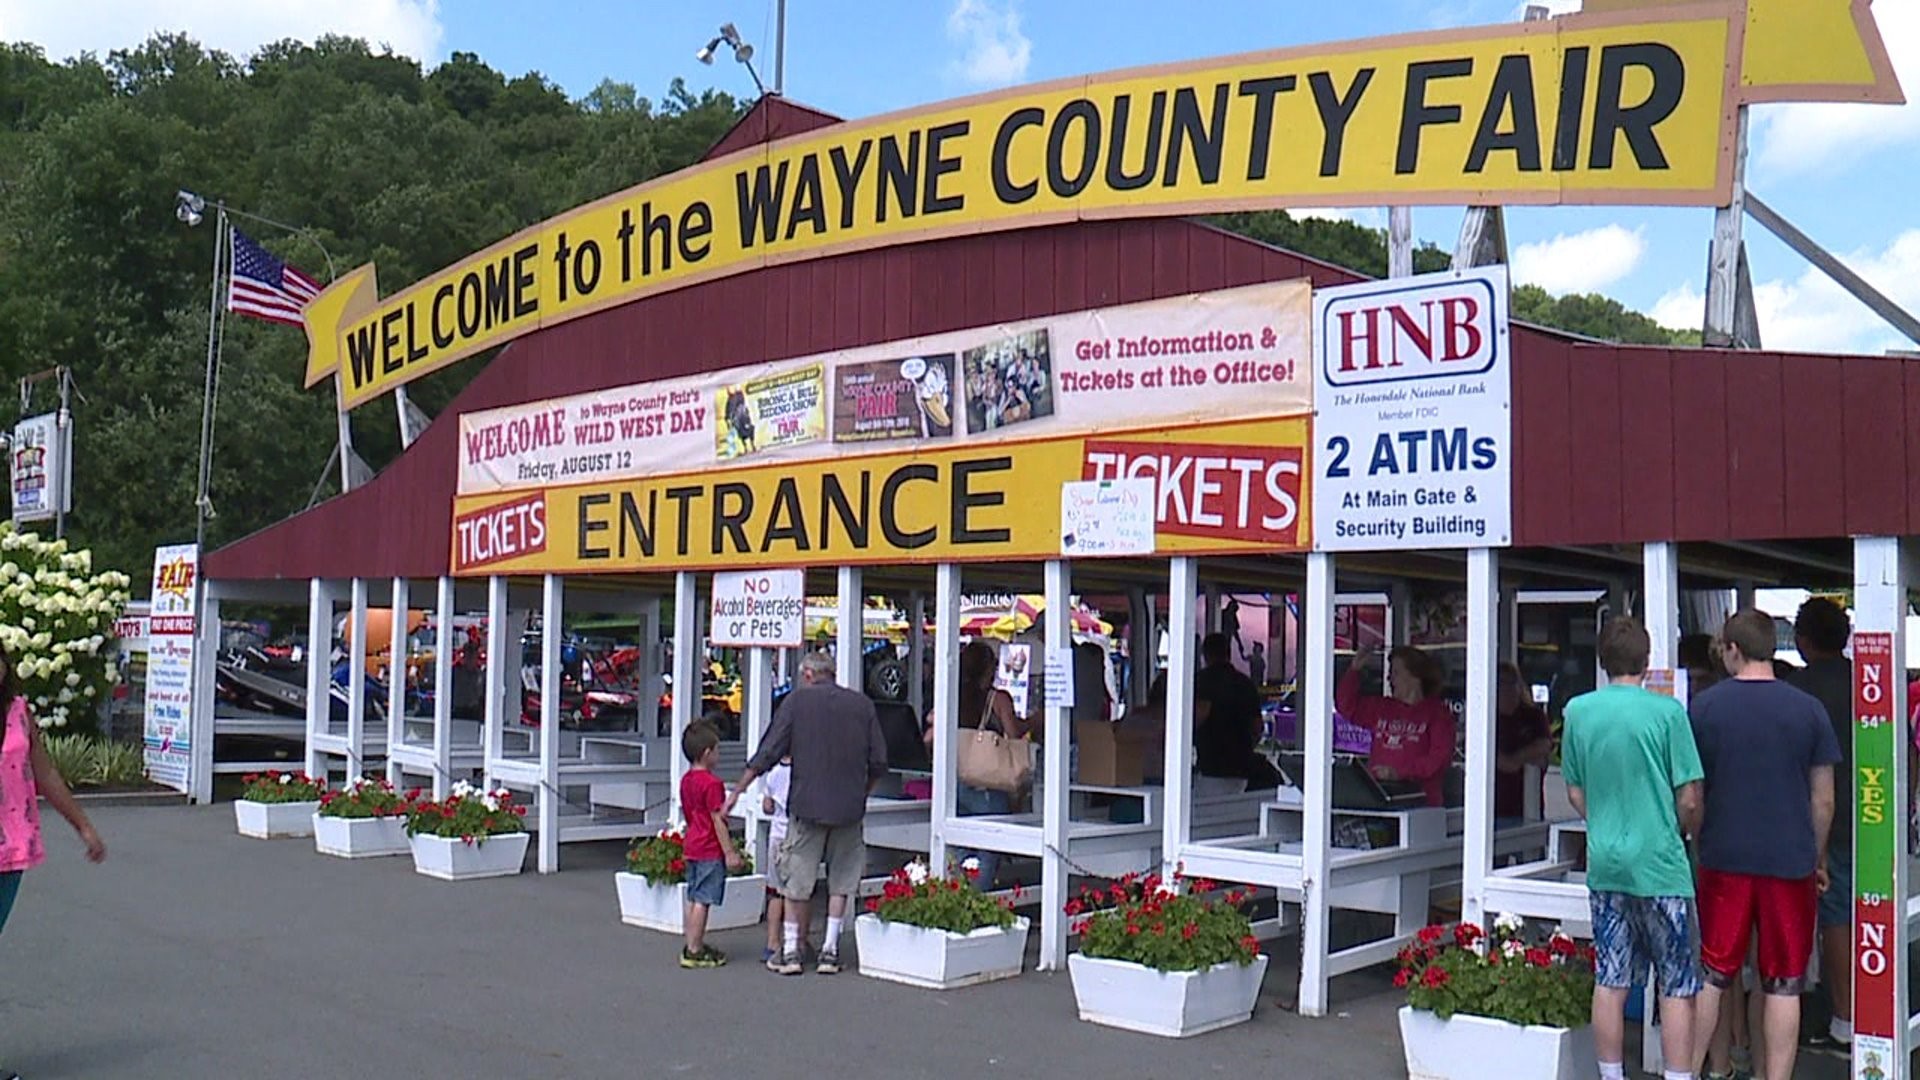 Wayne County Fair KickOff